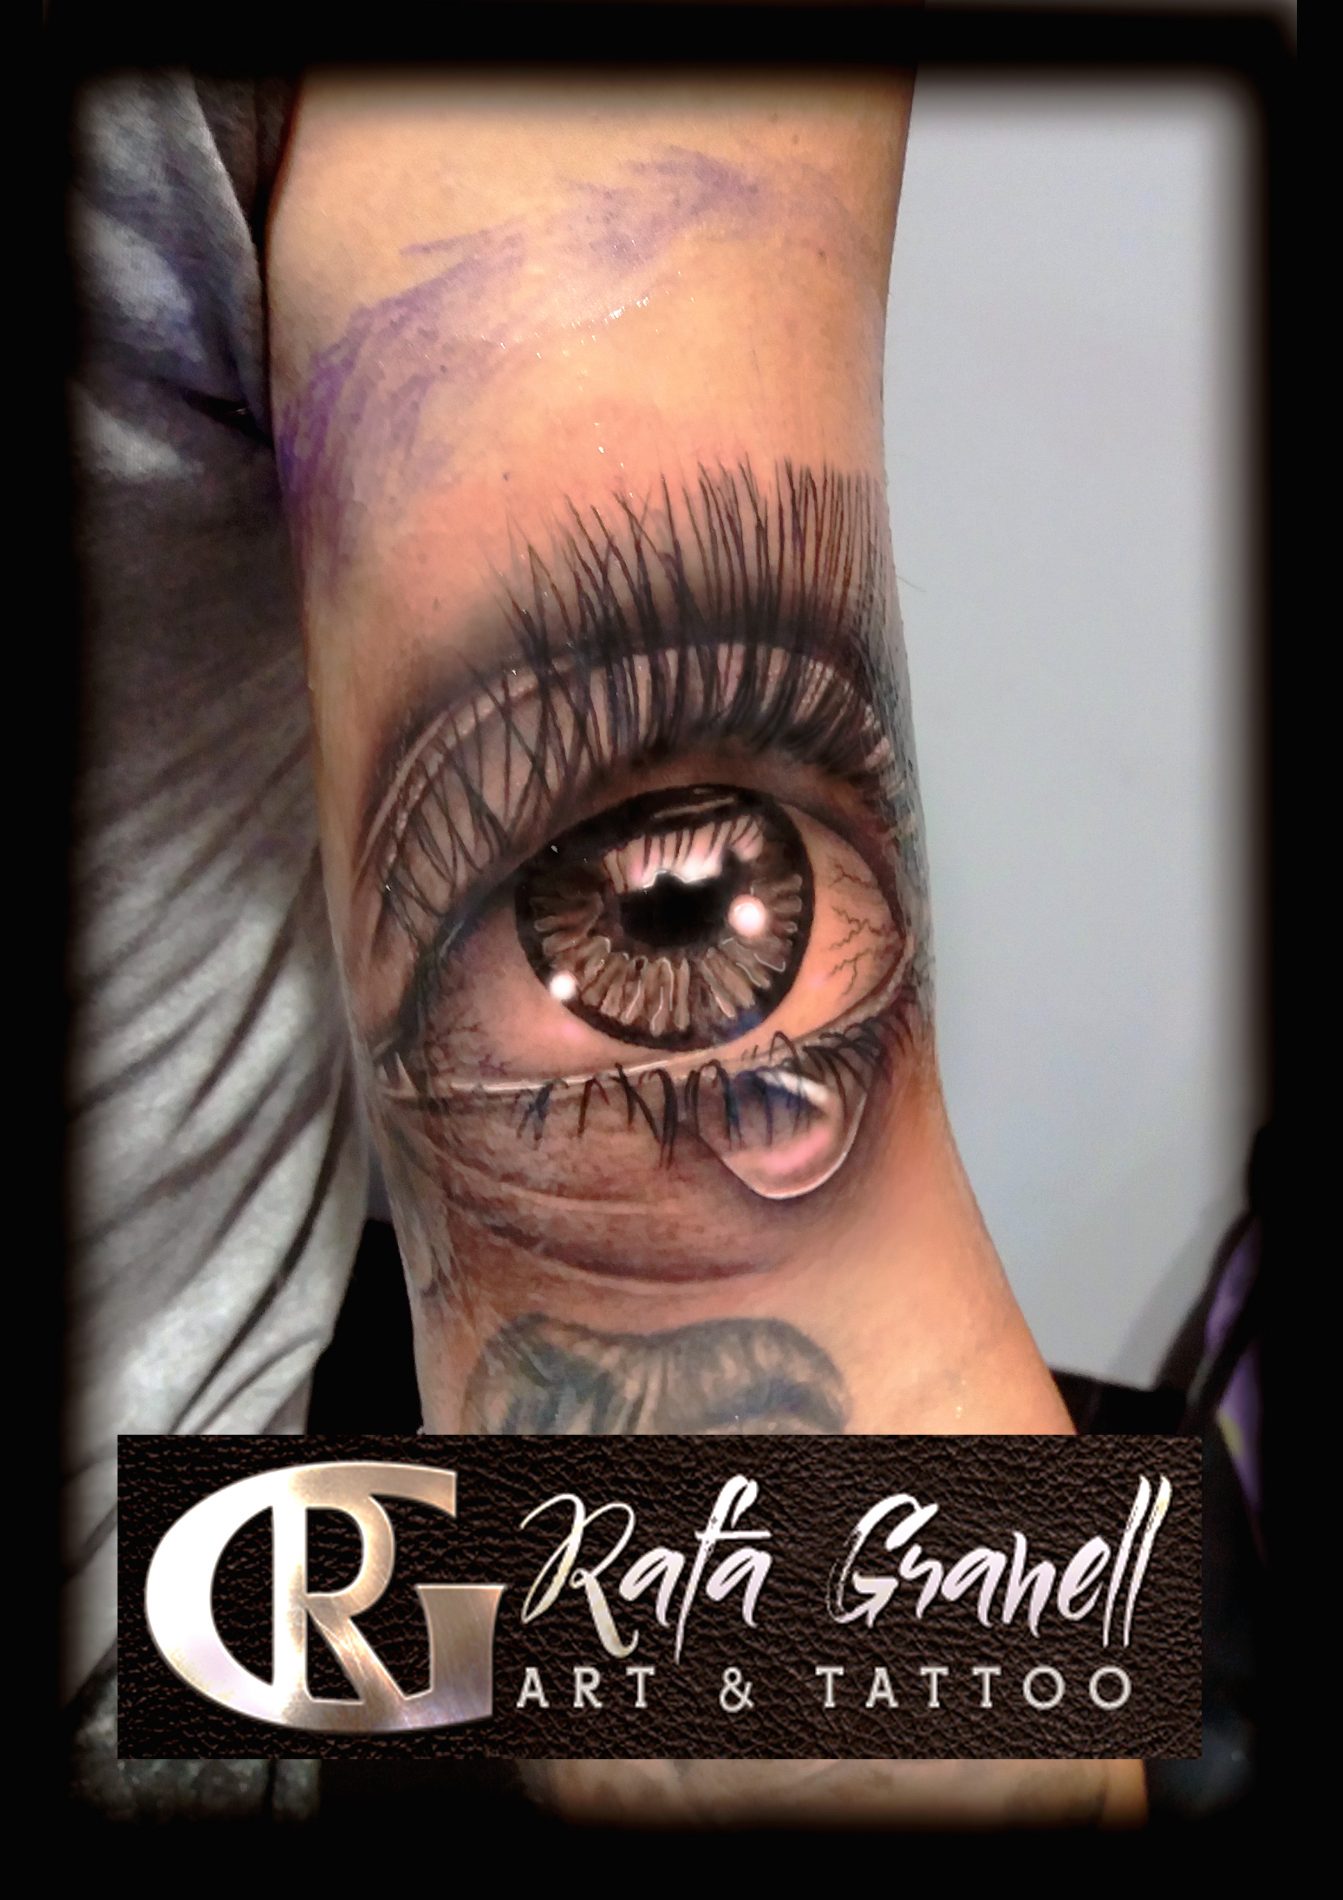 tattoo#tattoos#ojos#ojo#realistas#realista#tatuajes#tatuaje#realismo#blanco#negro#valencia#españa#spain#tatuador#valenciano#mejores#tatuajes#rafa#granell#rgtattoo#tatuadores valencianos#españoles#